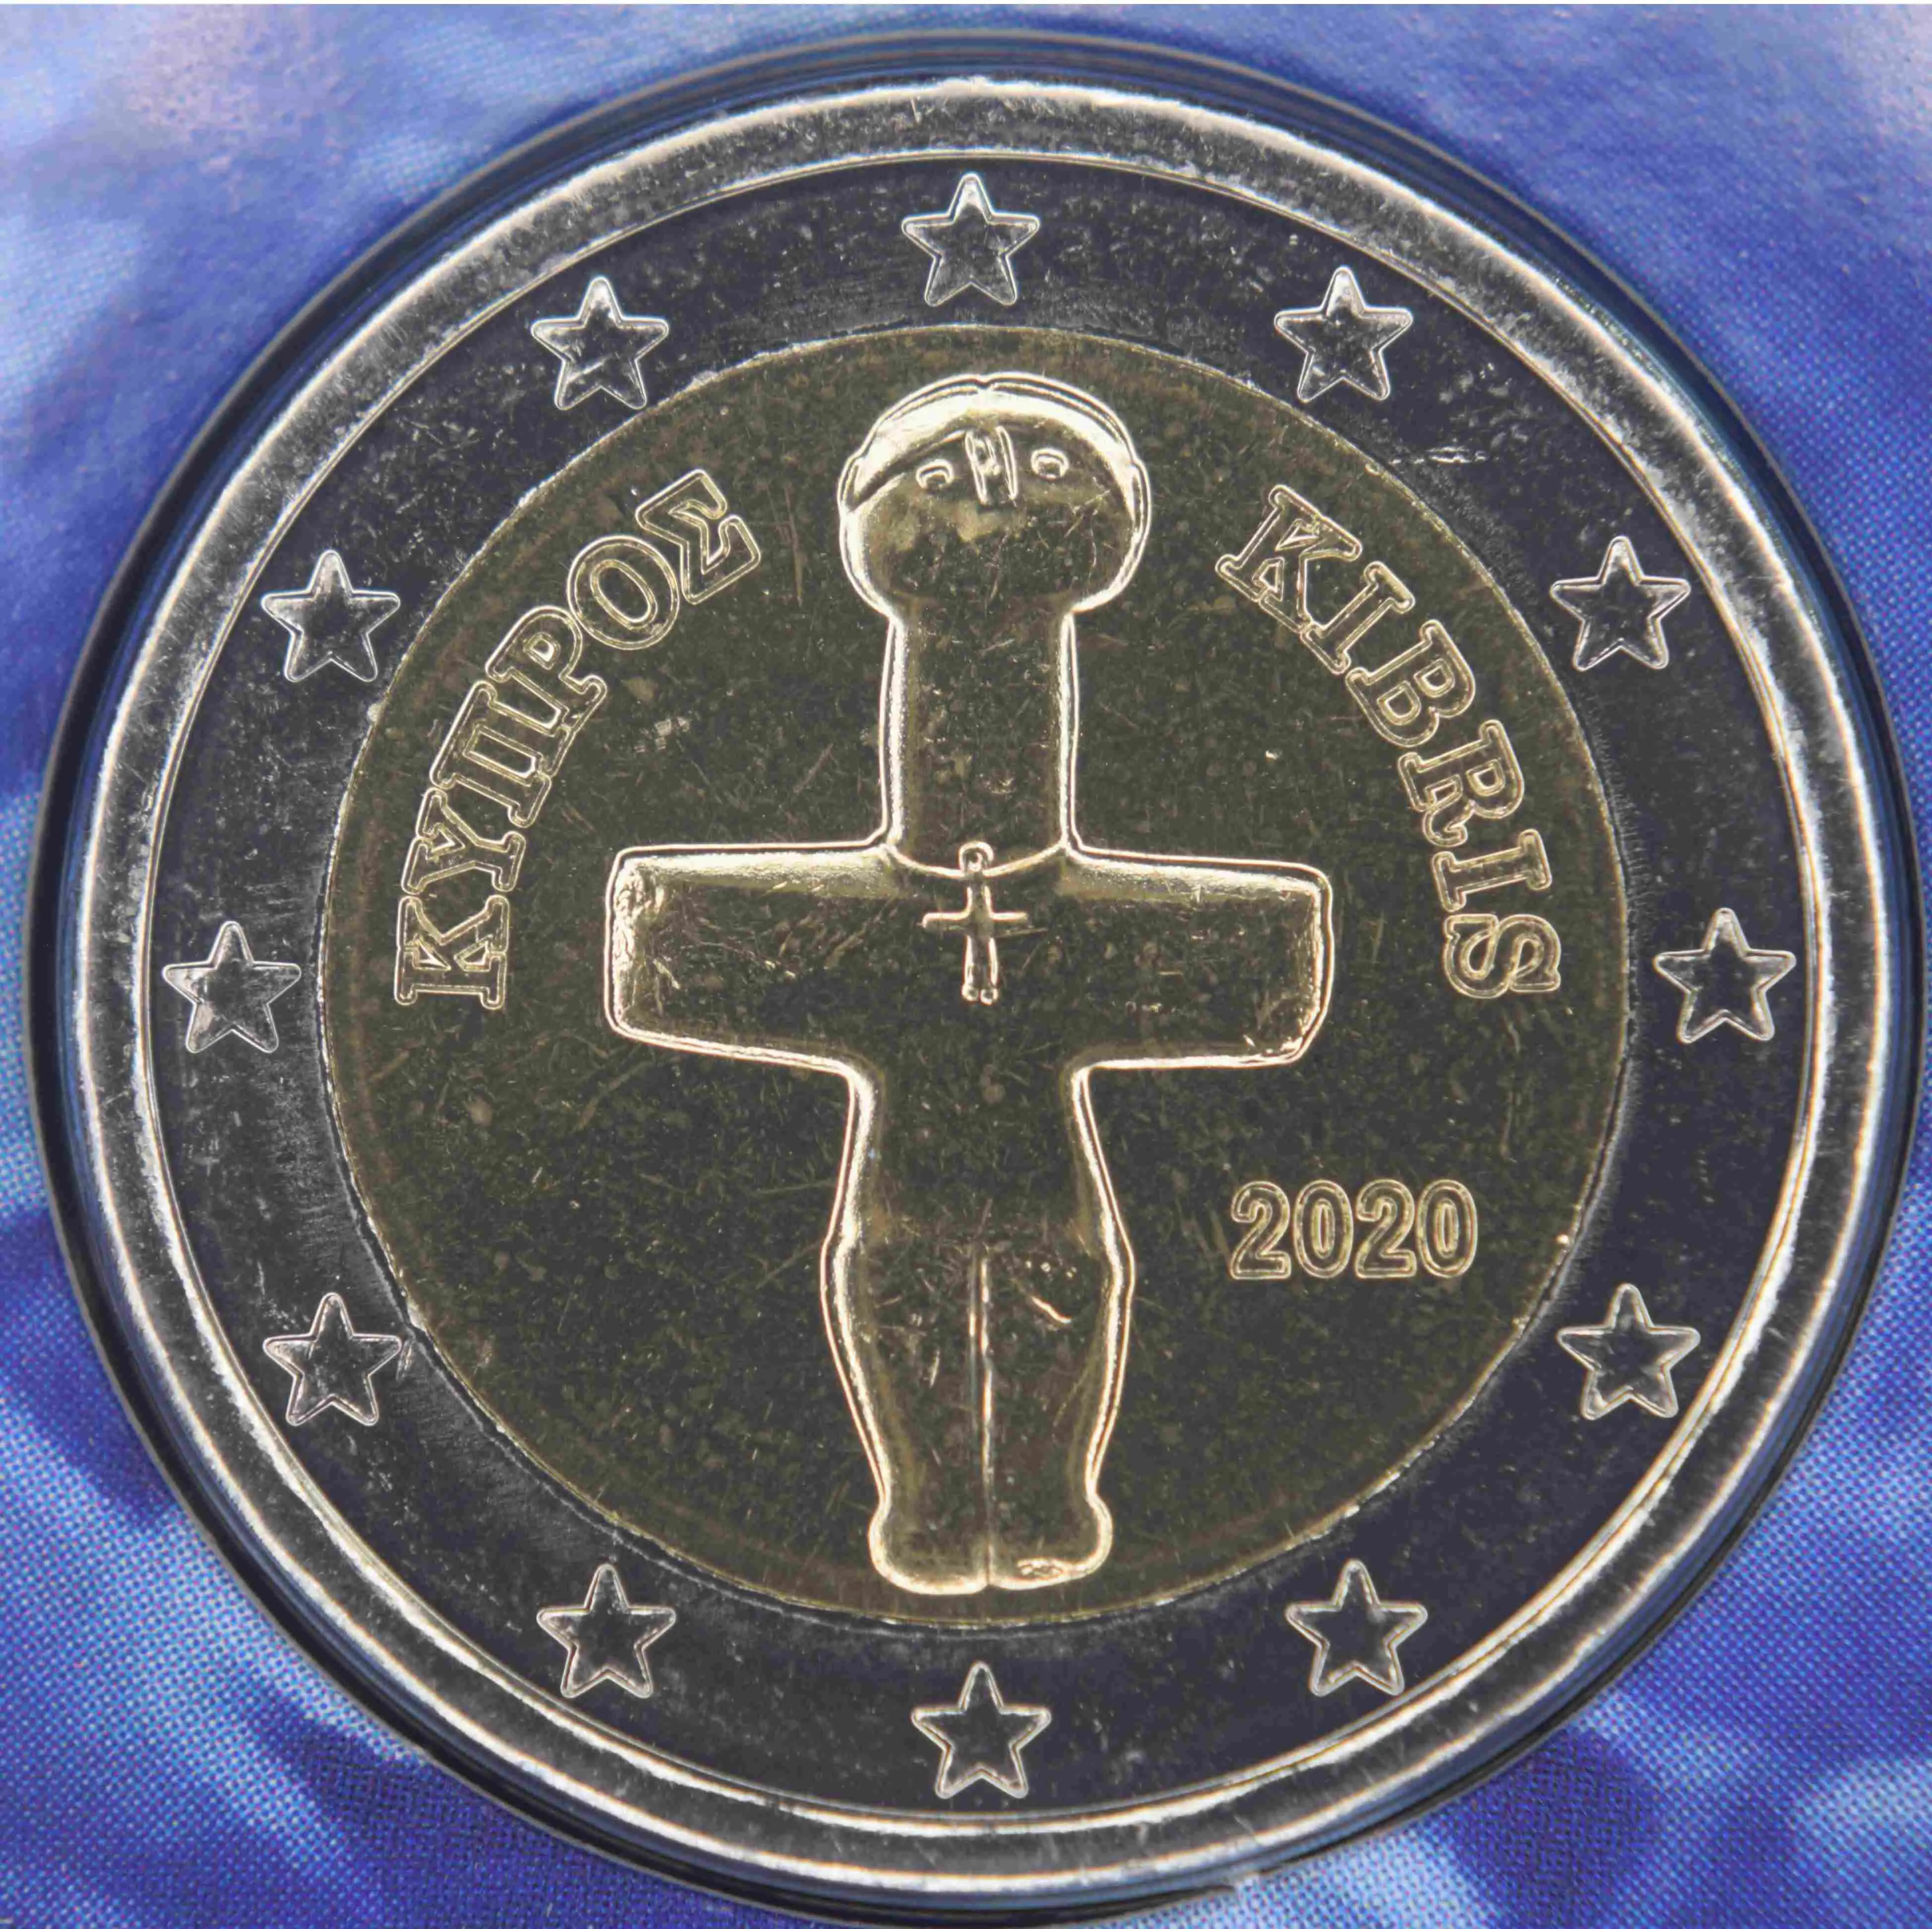 Zypern 2 Euro Münze 2020 - euro-muenzen.tv - Der Online Euromünzen Katalog